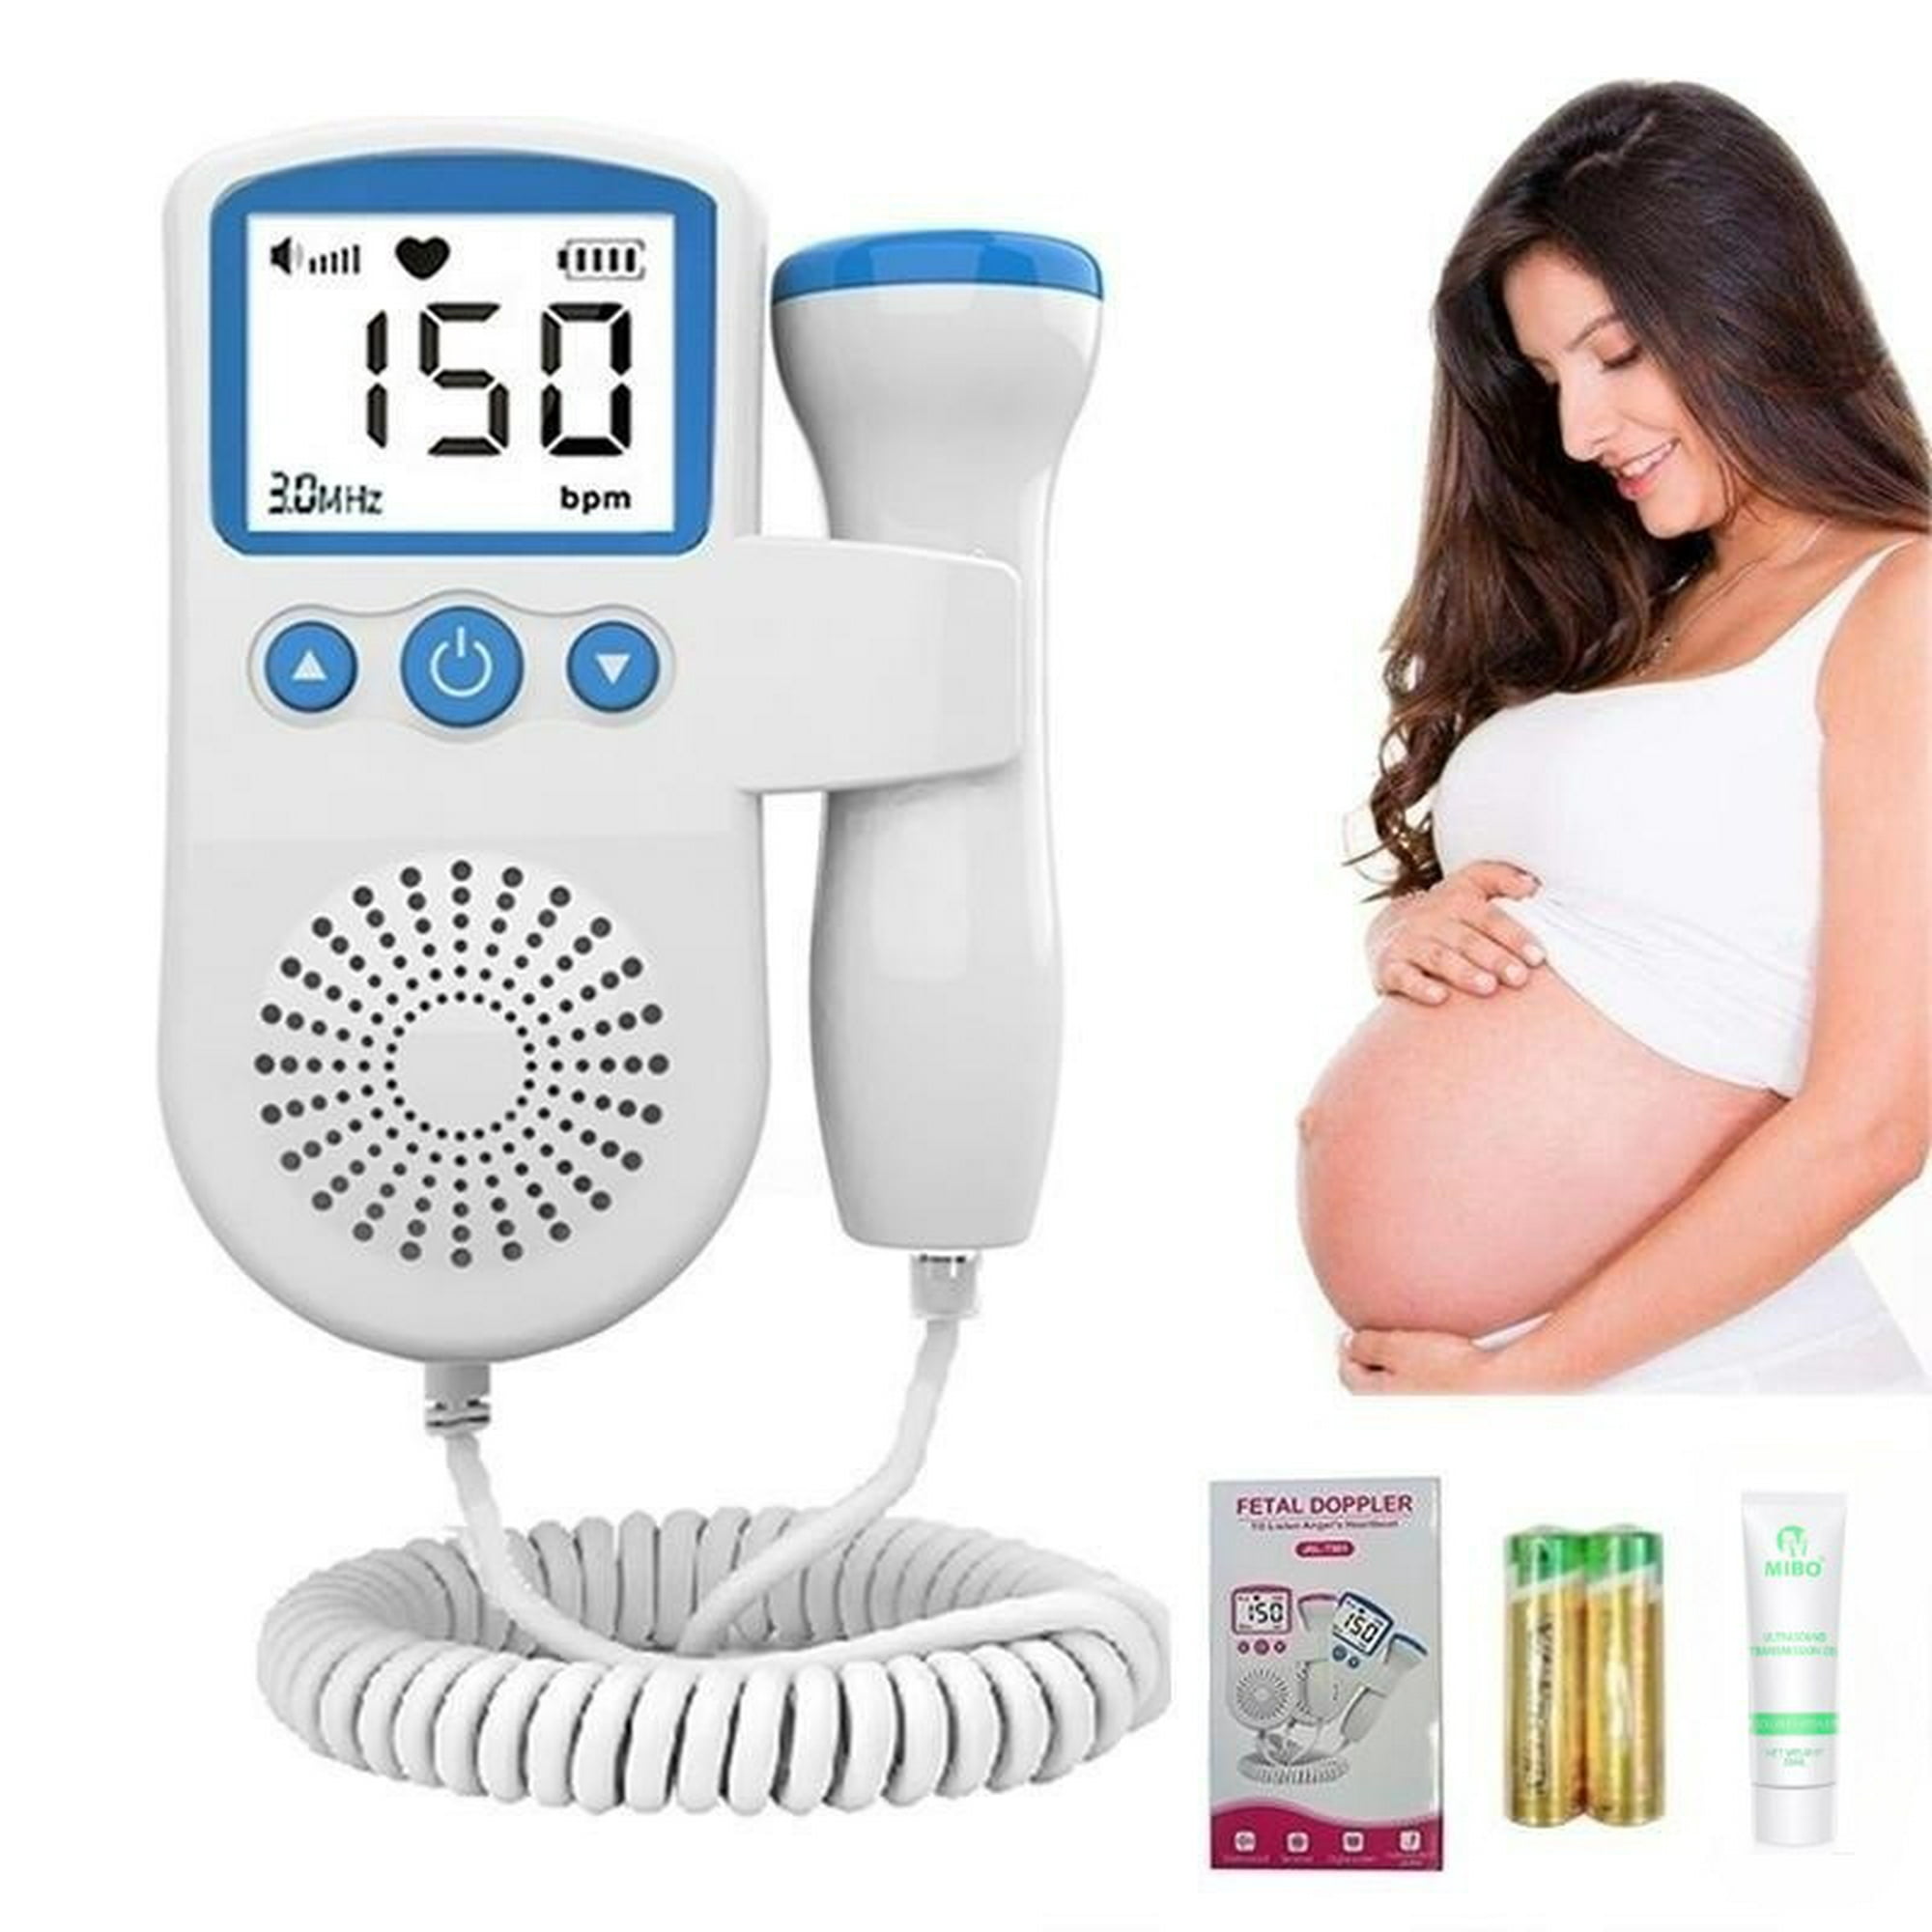 Detector de sónar Fetal para mujeres embarazadas, Monitor de pulso Fetal  portátil sin radiación para bebés bebes bebé mujer ultrasonido ecografo  portatil hogar ultrasonido portatil ecografo portatil medico cole -  AliExpress